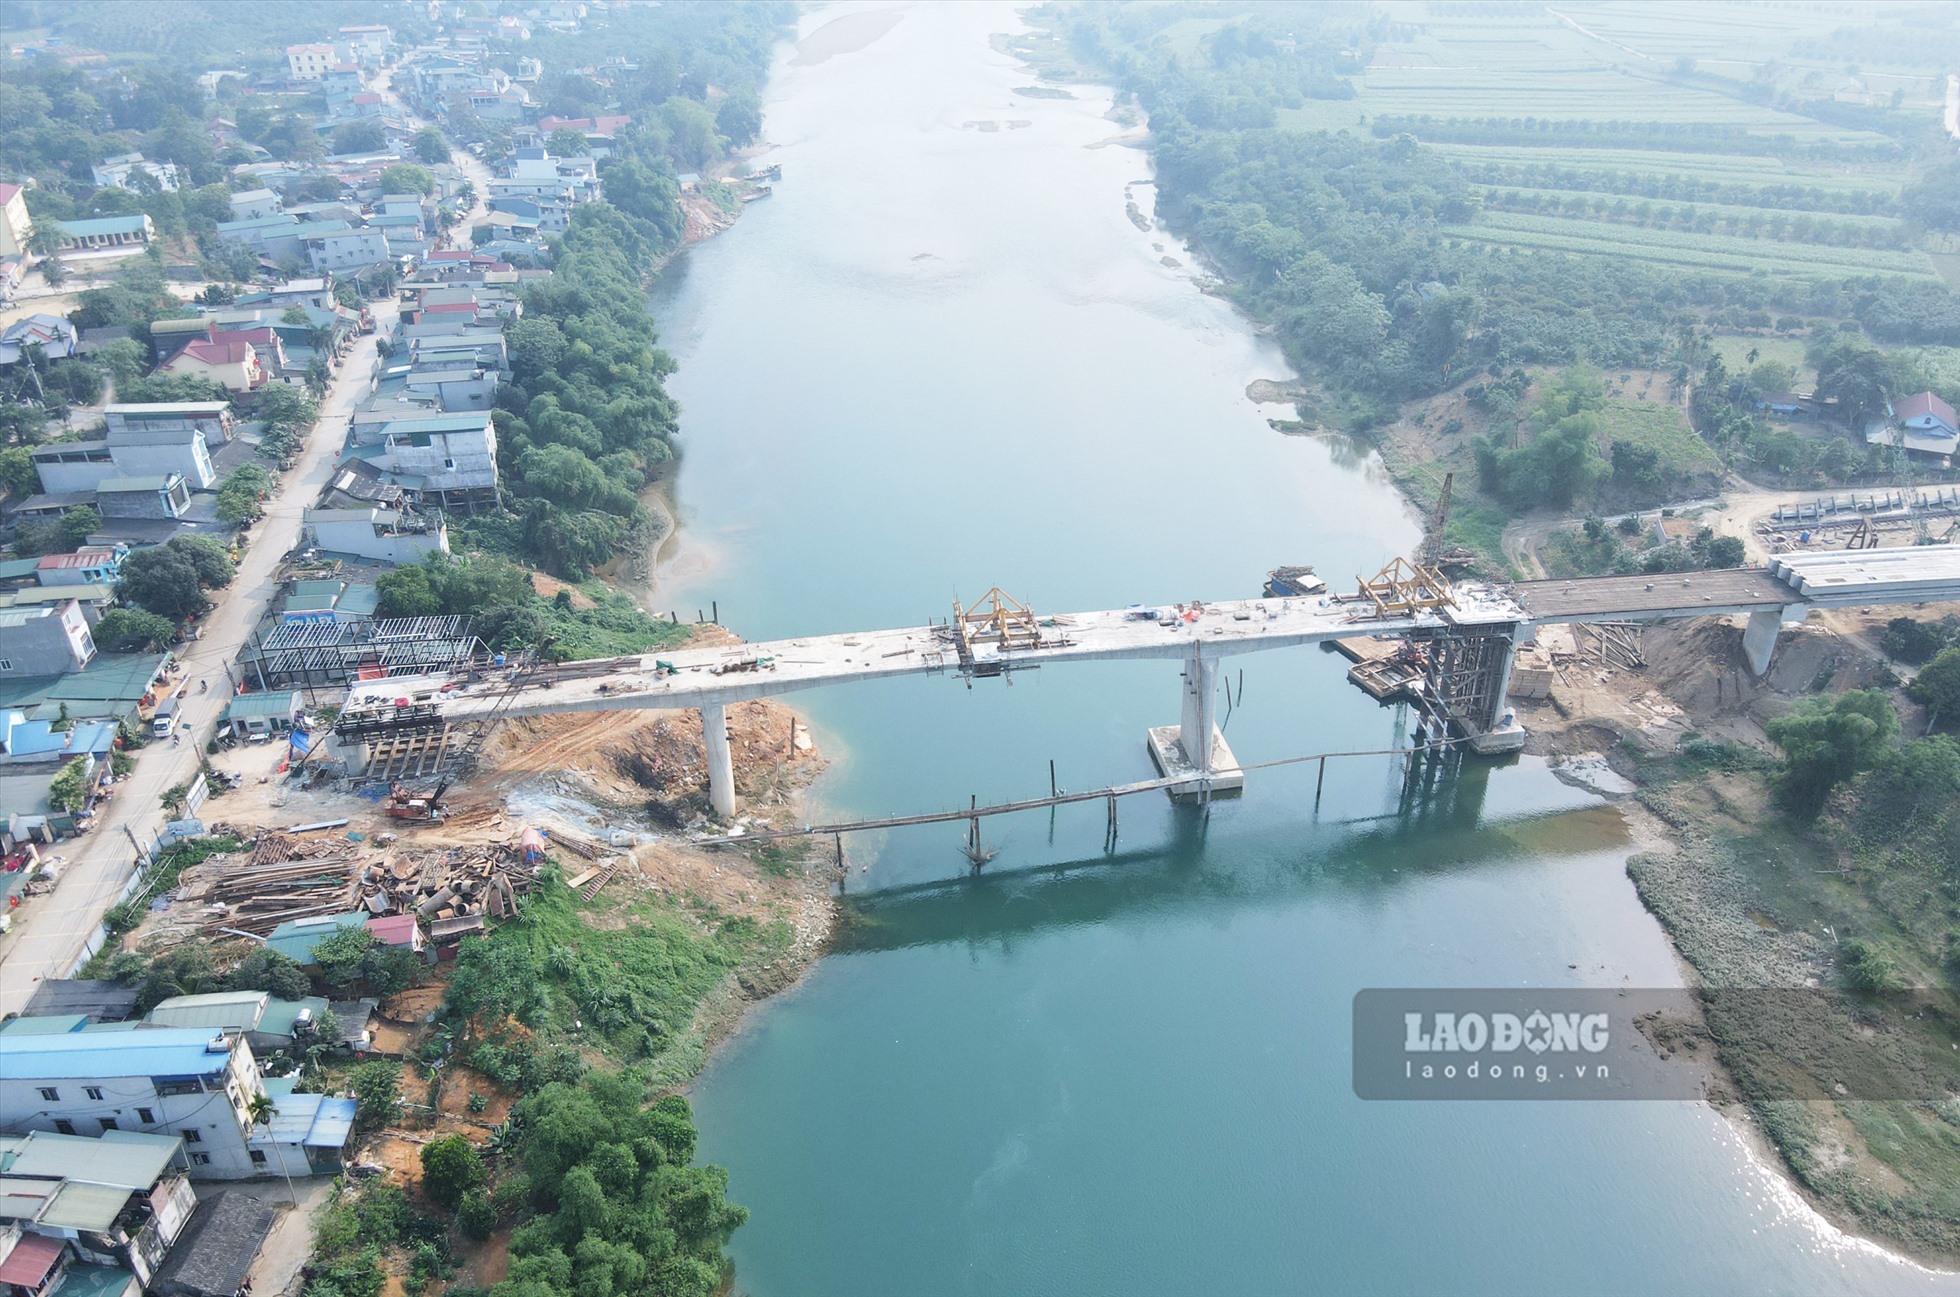 Dự án cầu Xuân Vân bắc qua sông Gầm được khởi công từ tháng 11.2021 với tổng mức đầu tư hơn 2.70 tỉ đồng.  Đây là công trình cấp II, có chiều dài cầu gần 300 m. Đường dẫn hai đầu cầu dài trên 1.900m. Công trình được xây dựng sẽ tăng cường khả năng kết nối, giao lưu giữa các xã hai bên bờ sông Gâm và vùng lân cận.